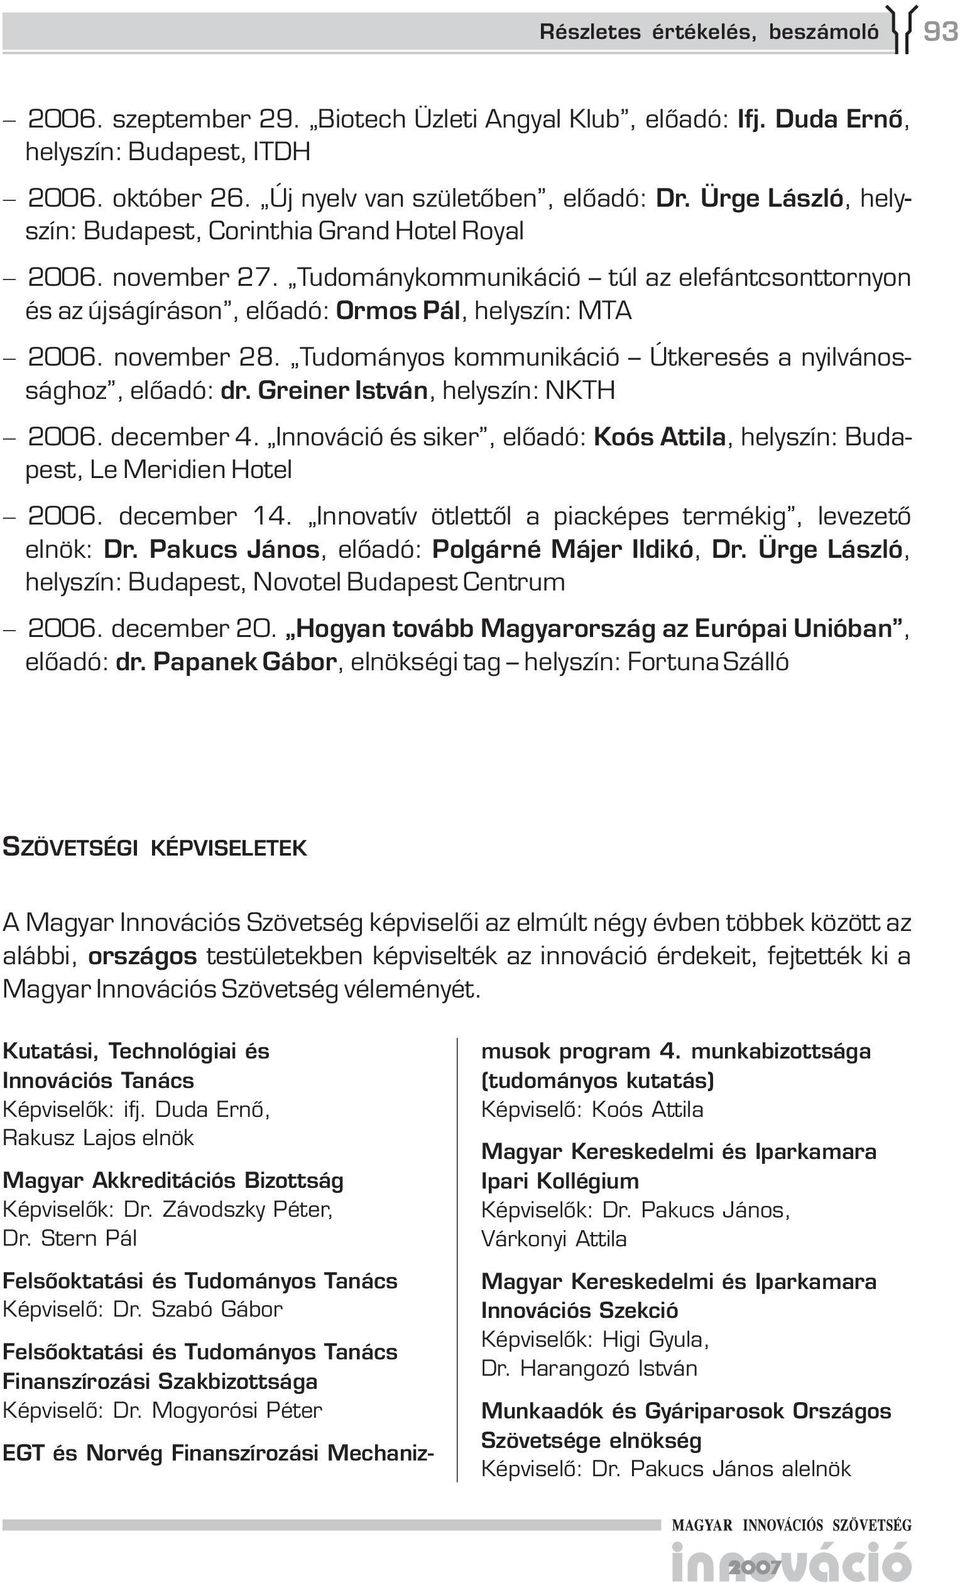 Tudományos kommunikáció Útkeresés a nyilvánossághoz, előadó: dr. Greiner István, helyszín: NKTH 2006. december 4. Innováció és siker, előadó: Koós Attila, helyszín: Budapest, Le Meridien Hotel 2006.